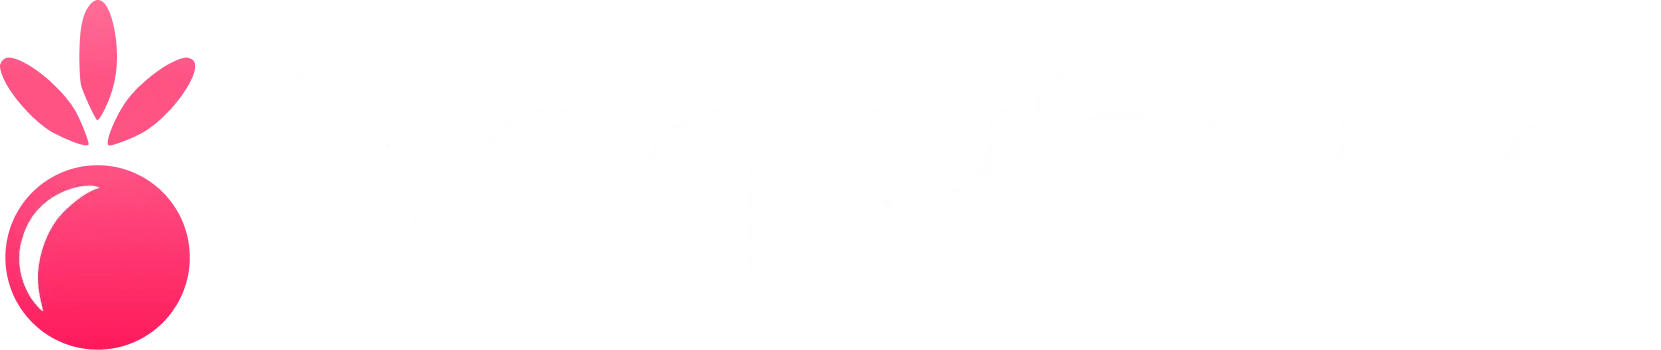 berrybyte logo